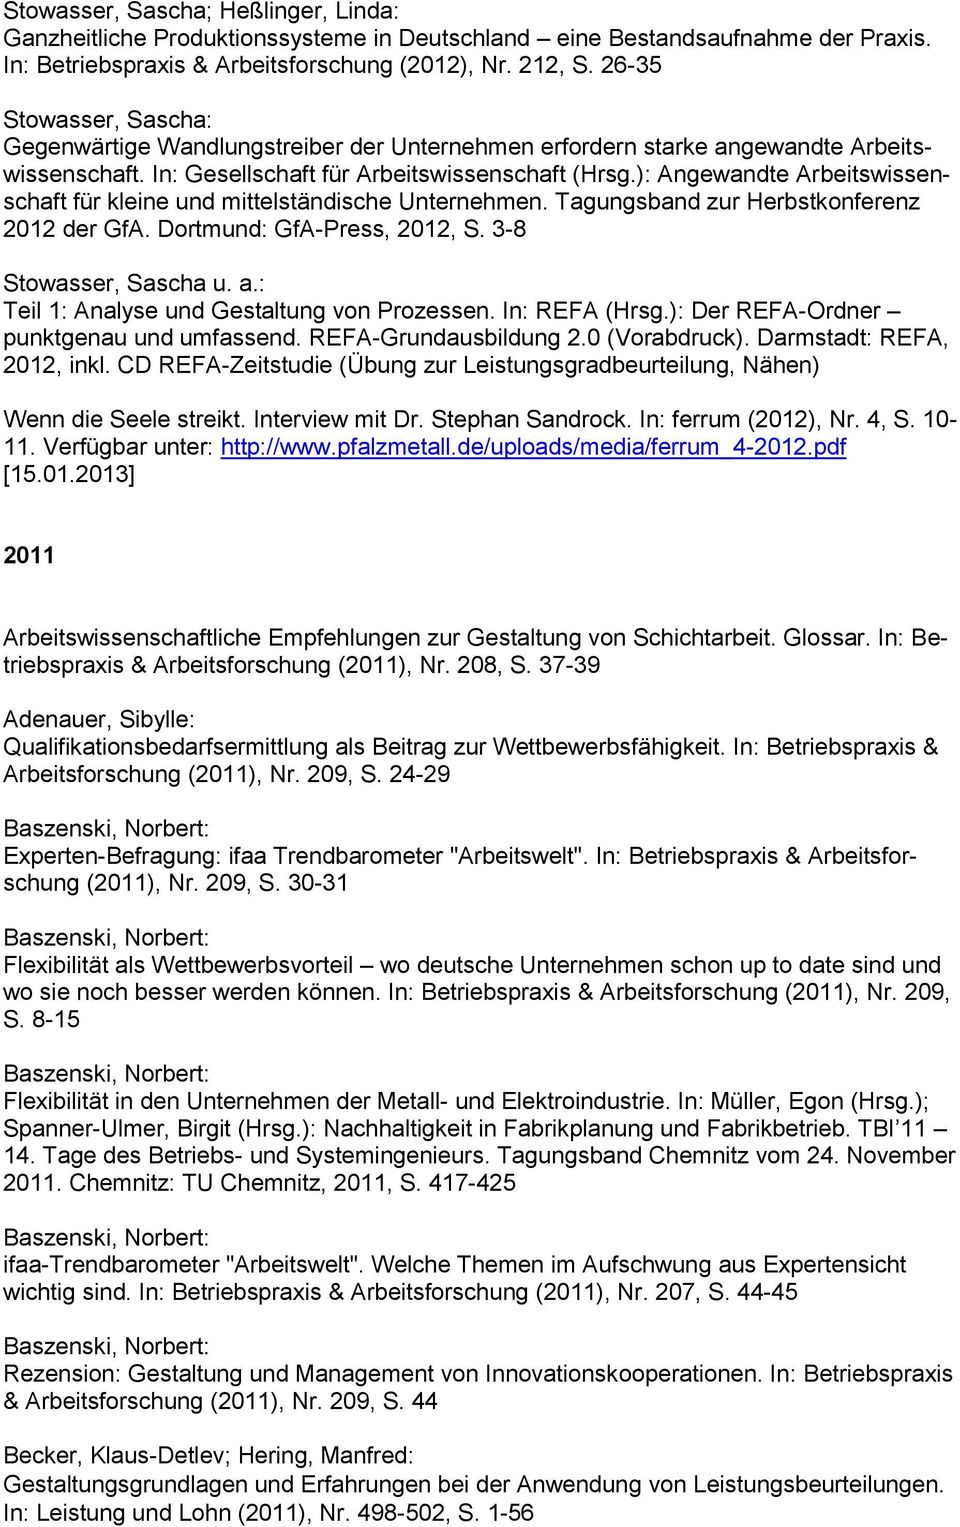 ): Angewandte Arbeitswissenschaft für kleine und mittelständische Unternehmen. Tagungsband zur Herbstkonferenz 2012 der GfA. Dortmund: GfA-Press, 2012, S. 3-8 Stowasser, Sascha u. a.